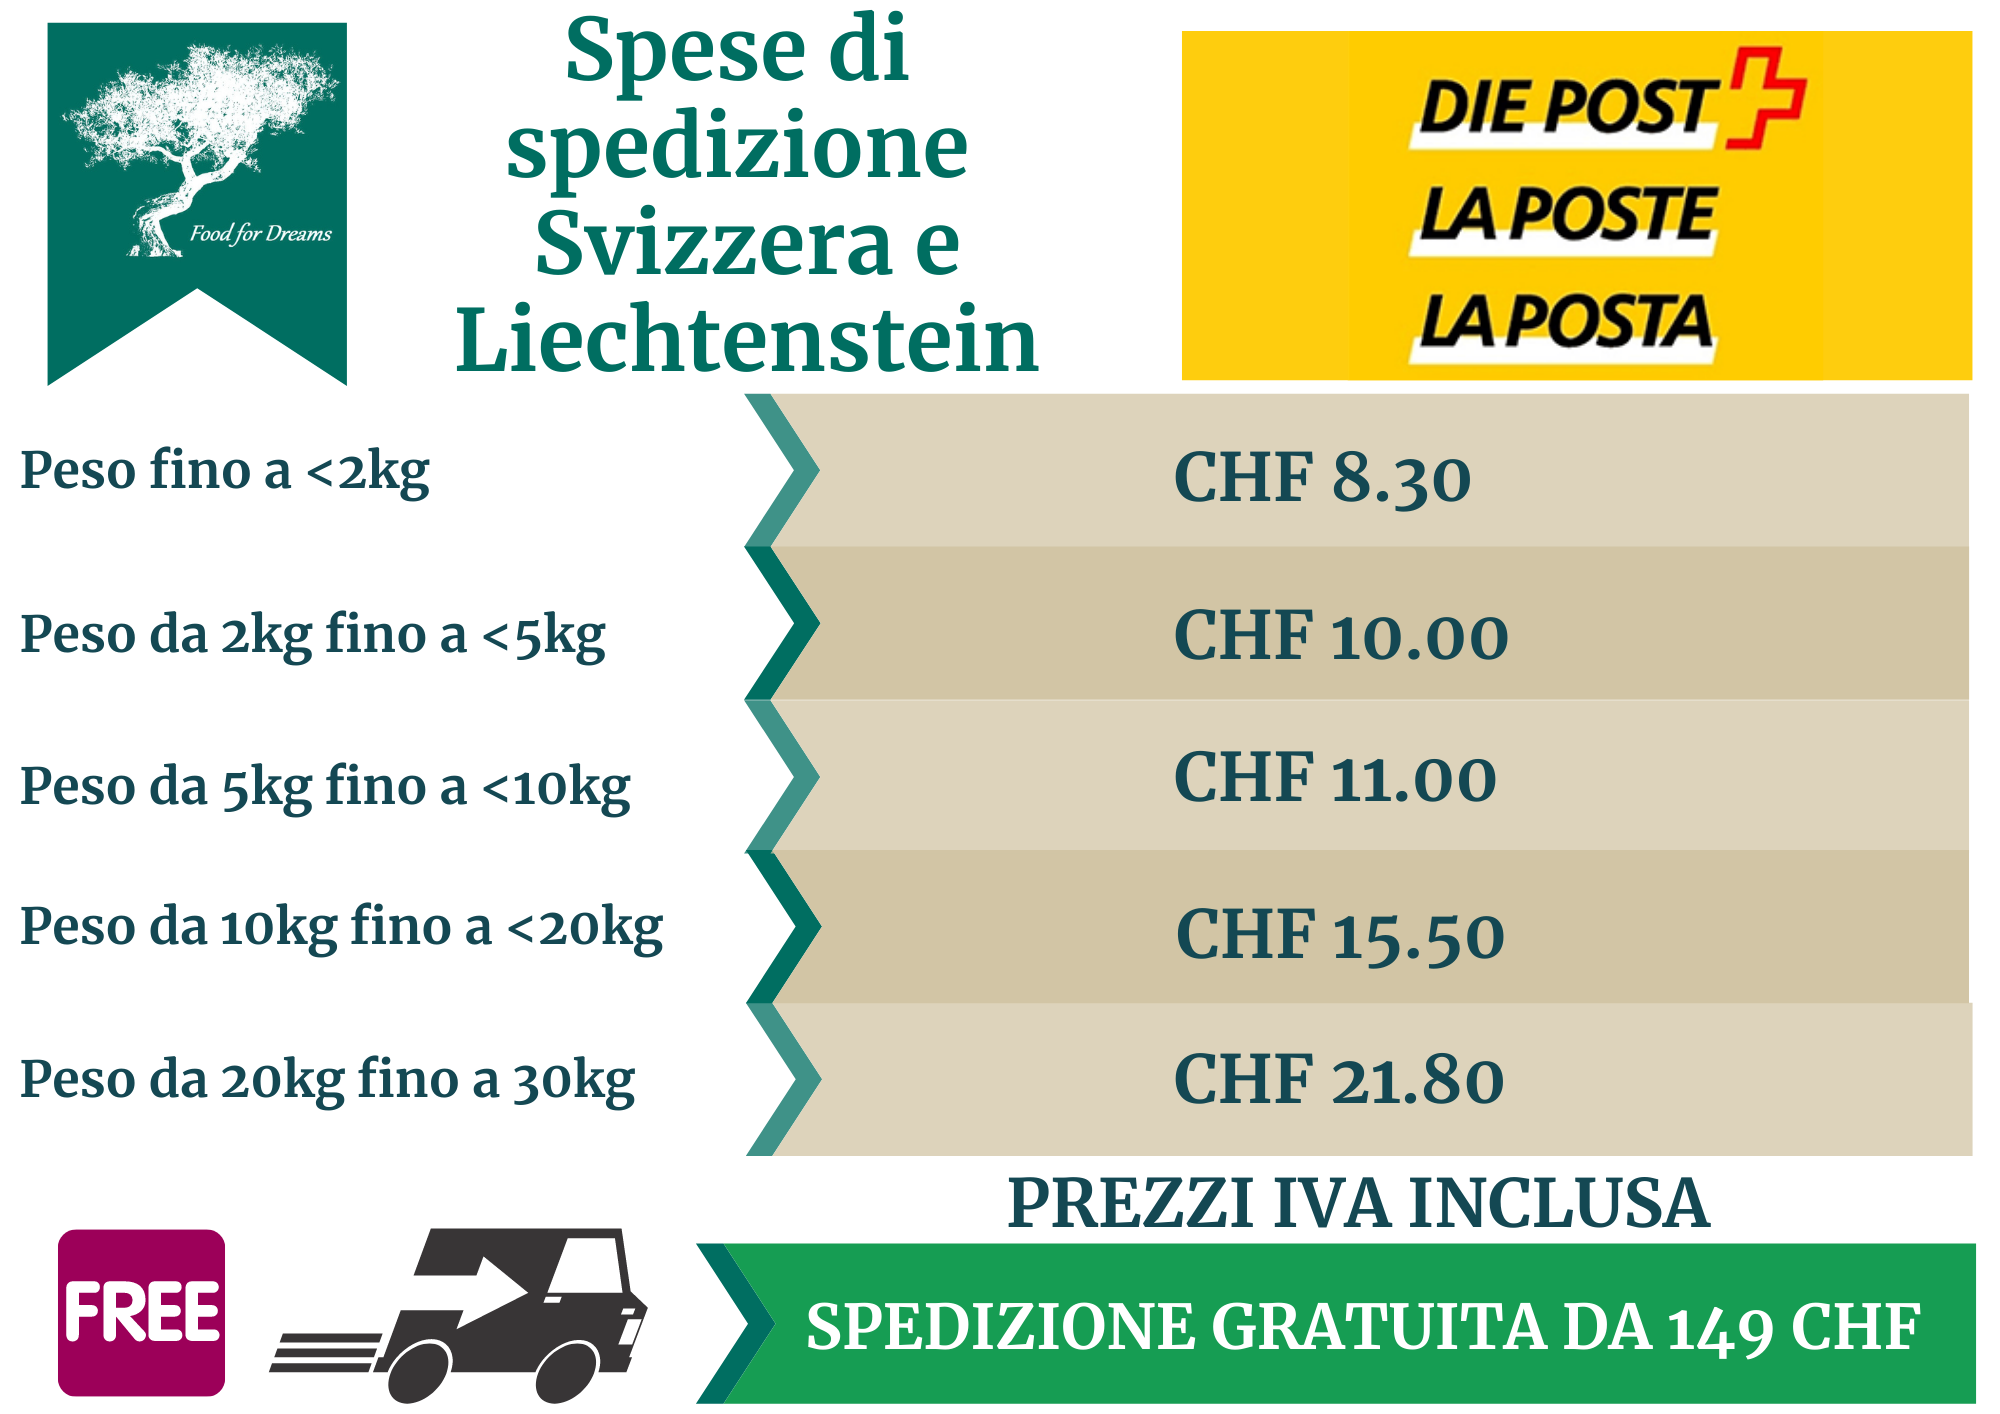 Spese_di_spedizione_Svizzera_e_Liechtenstein_2022